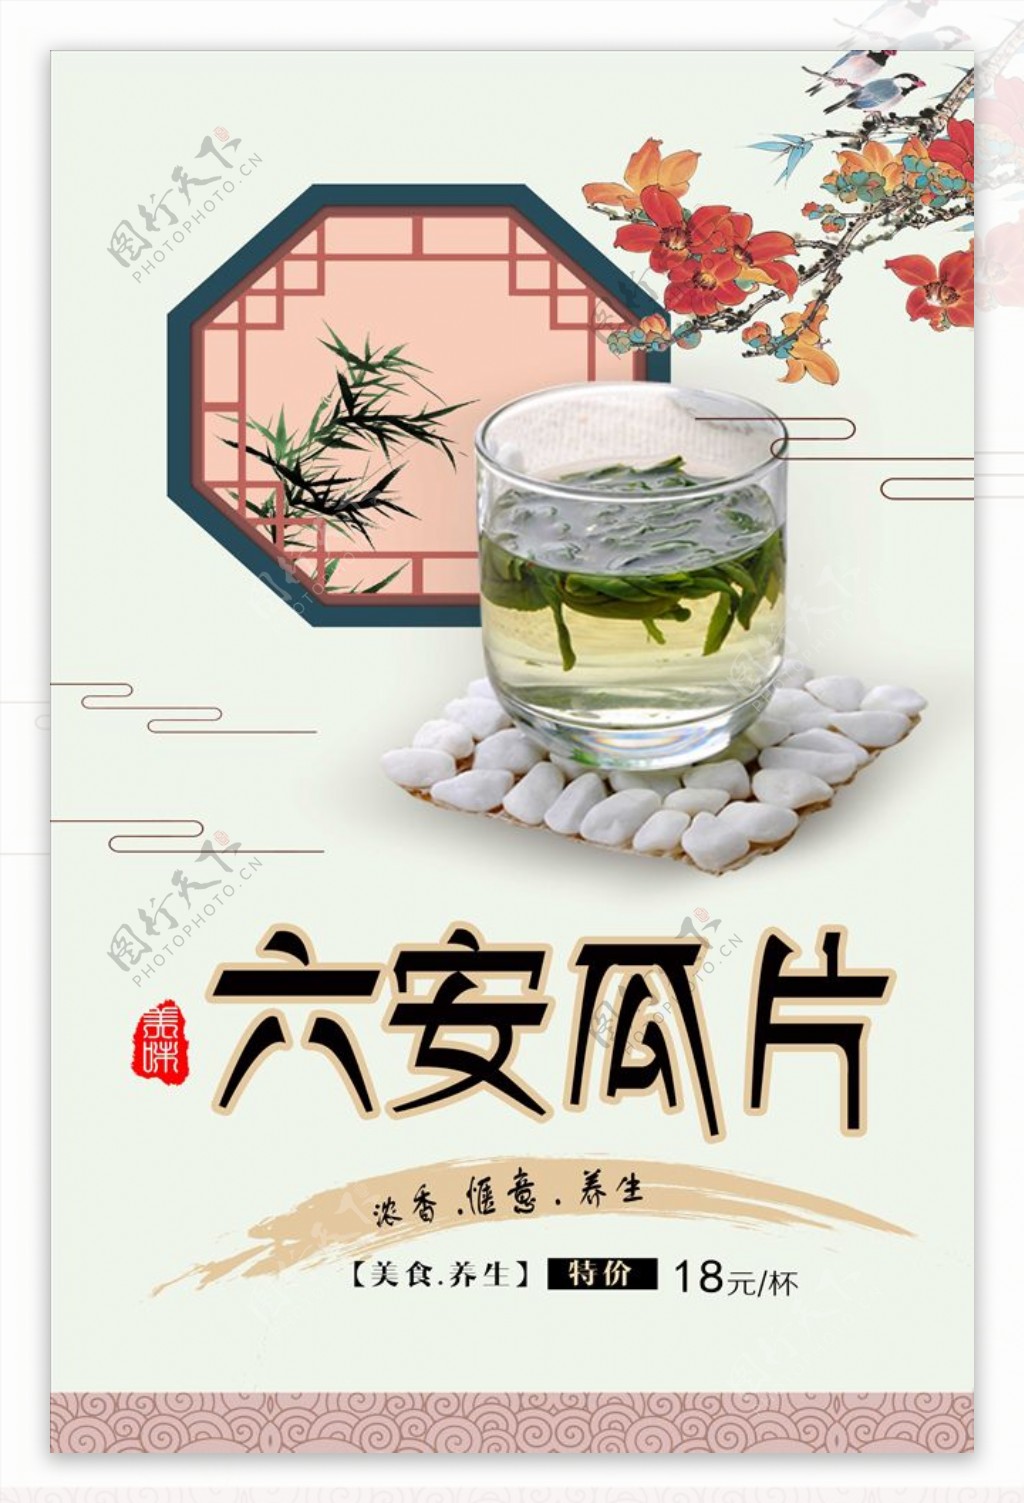 经典创意西湖龙井茶文化海报宣传